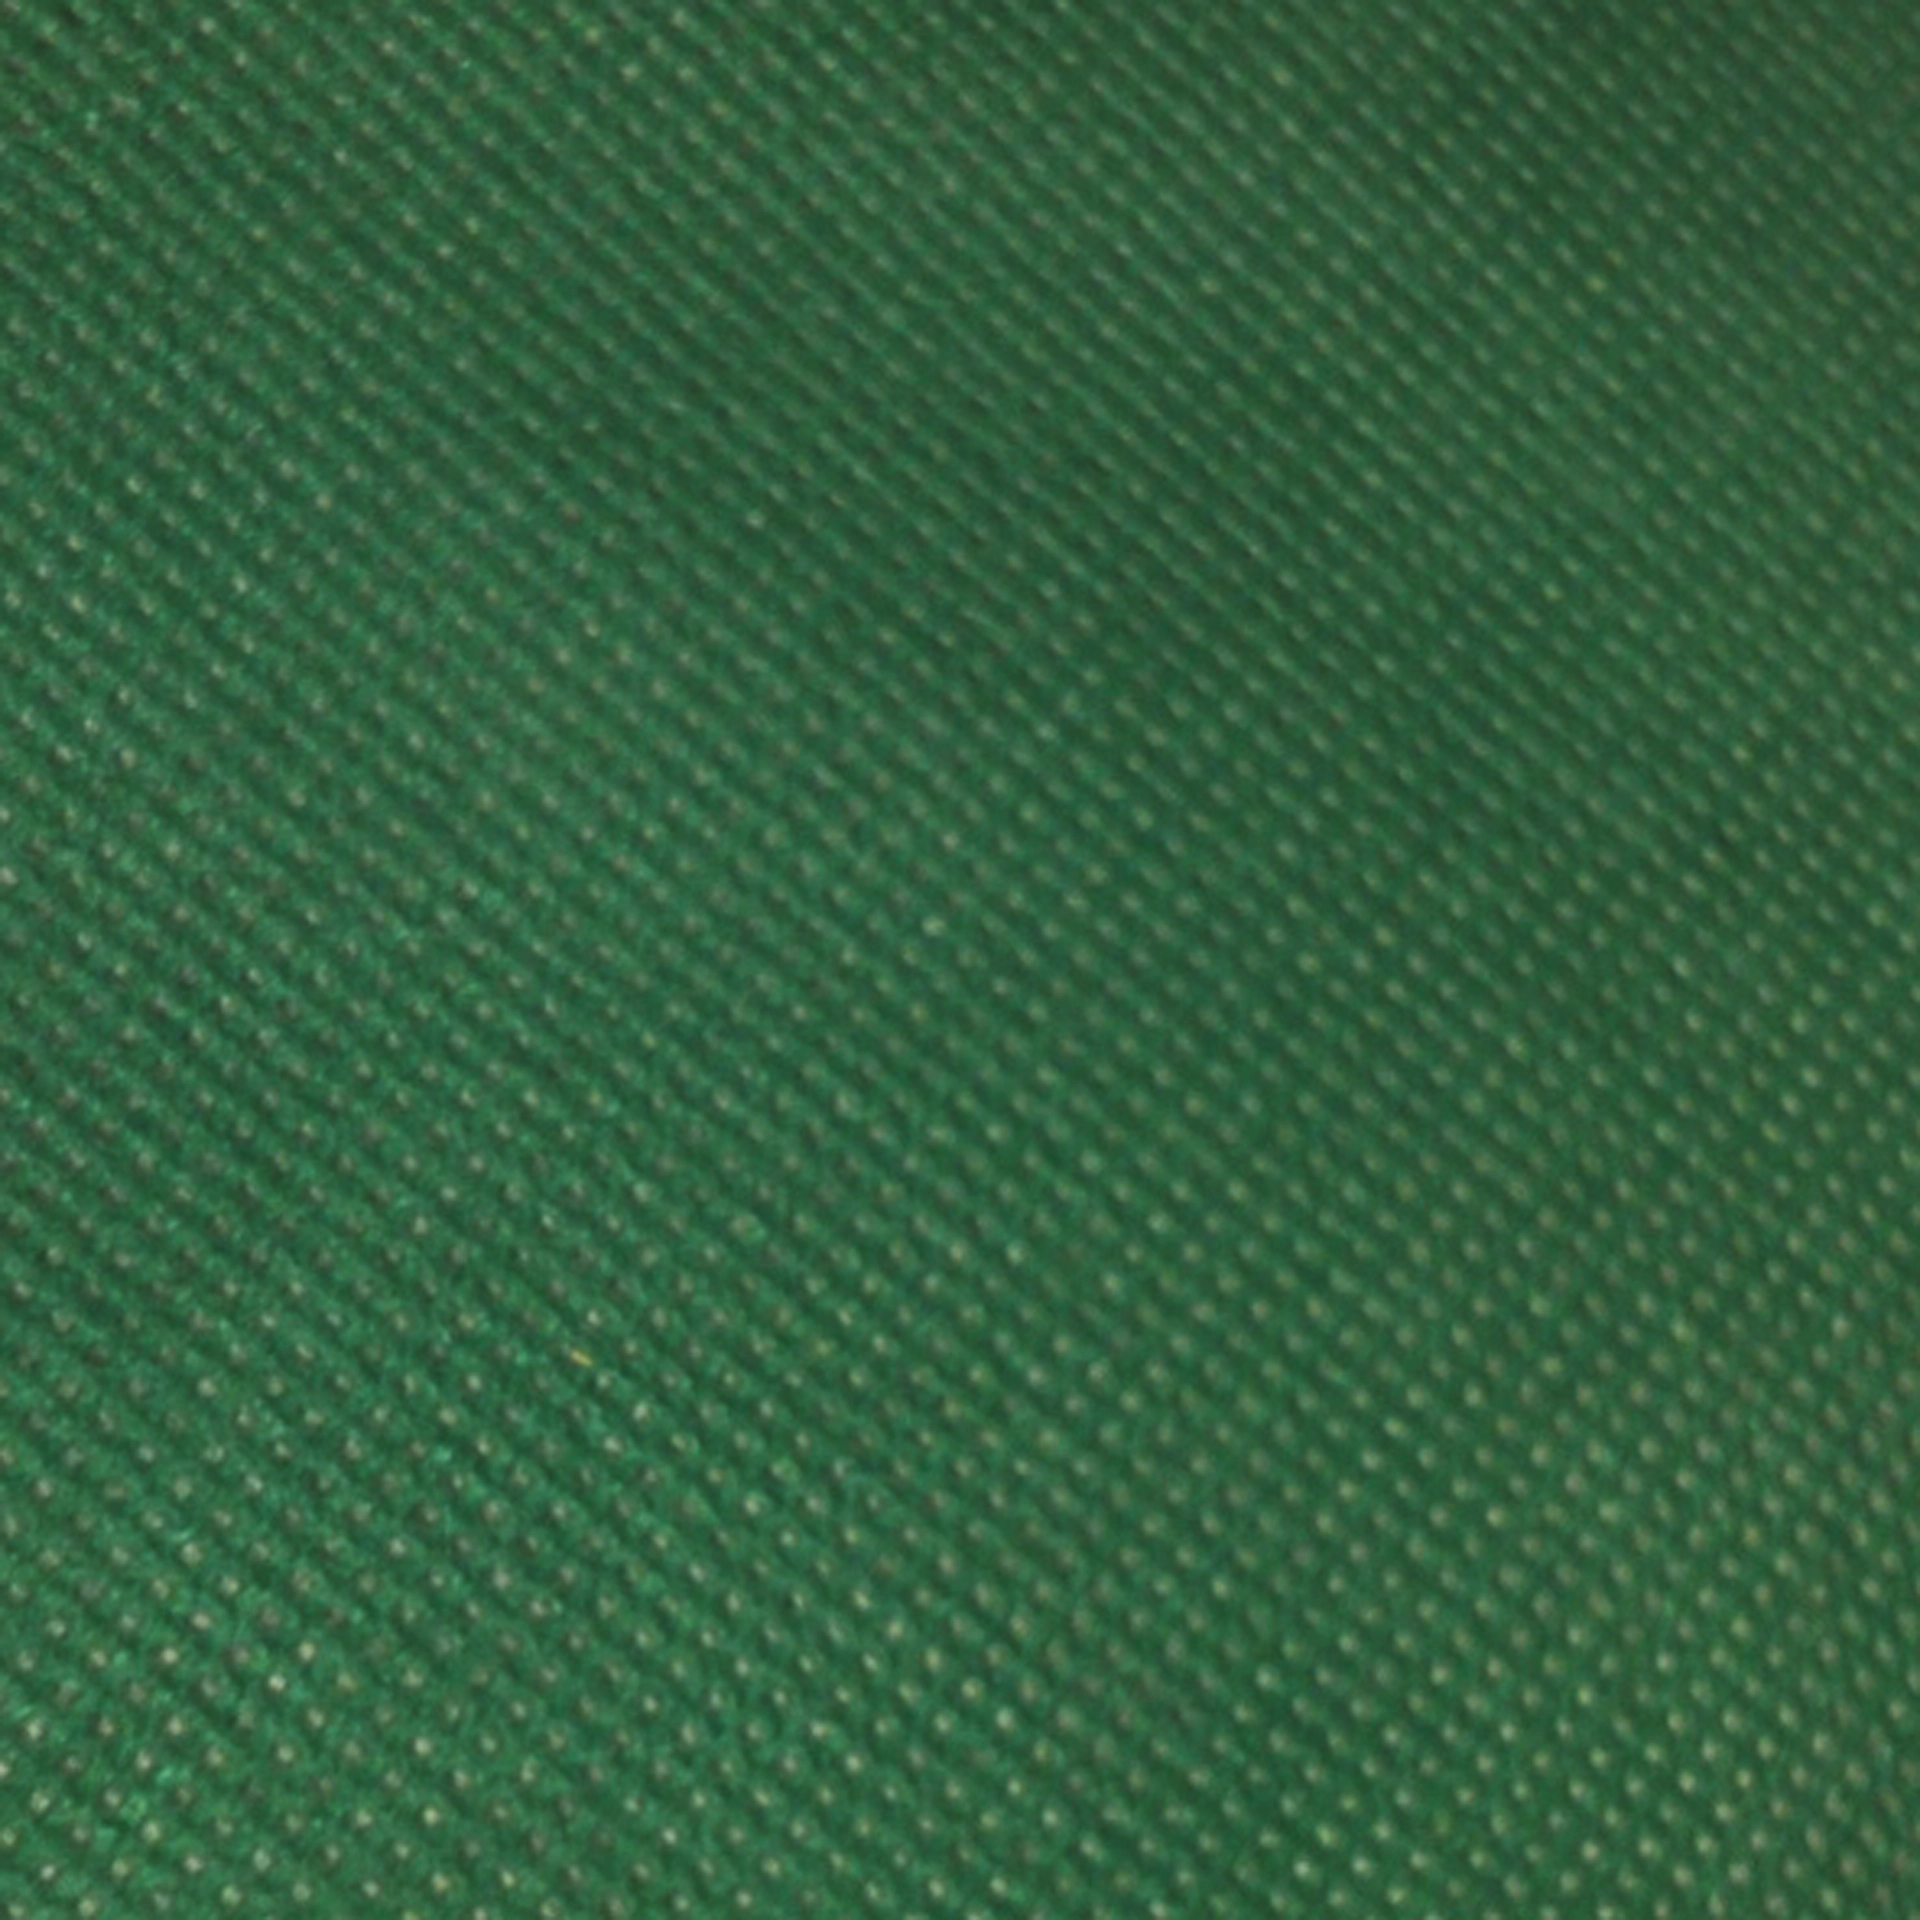 Aufleger | Airspun grün 100x100 cm 